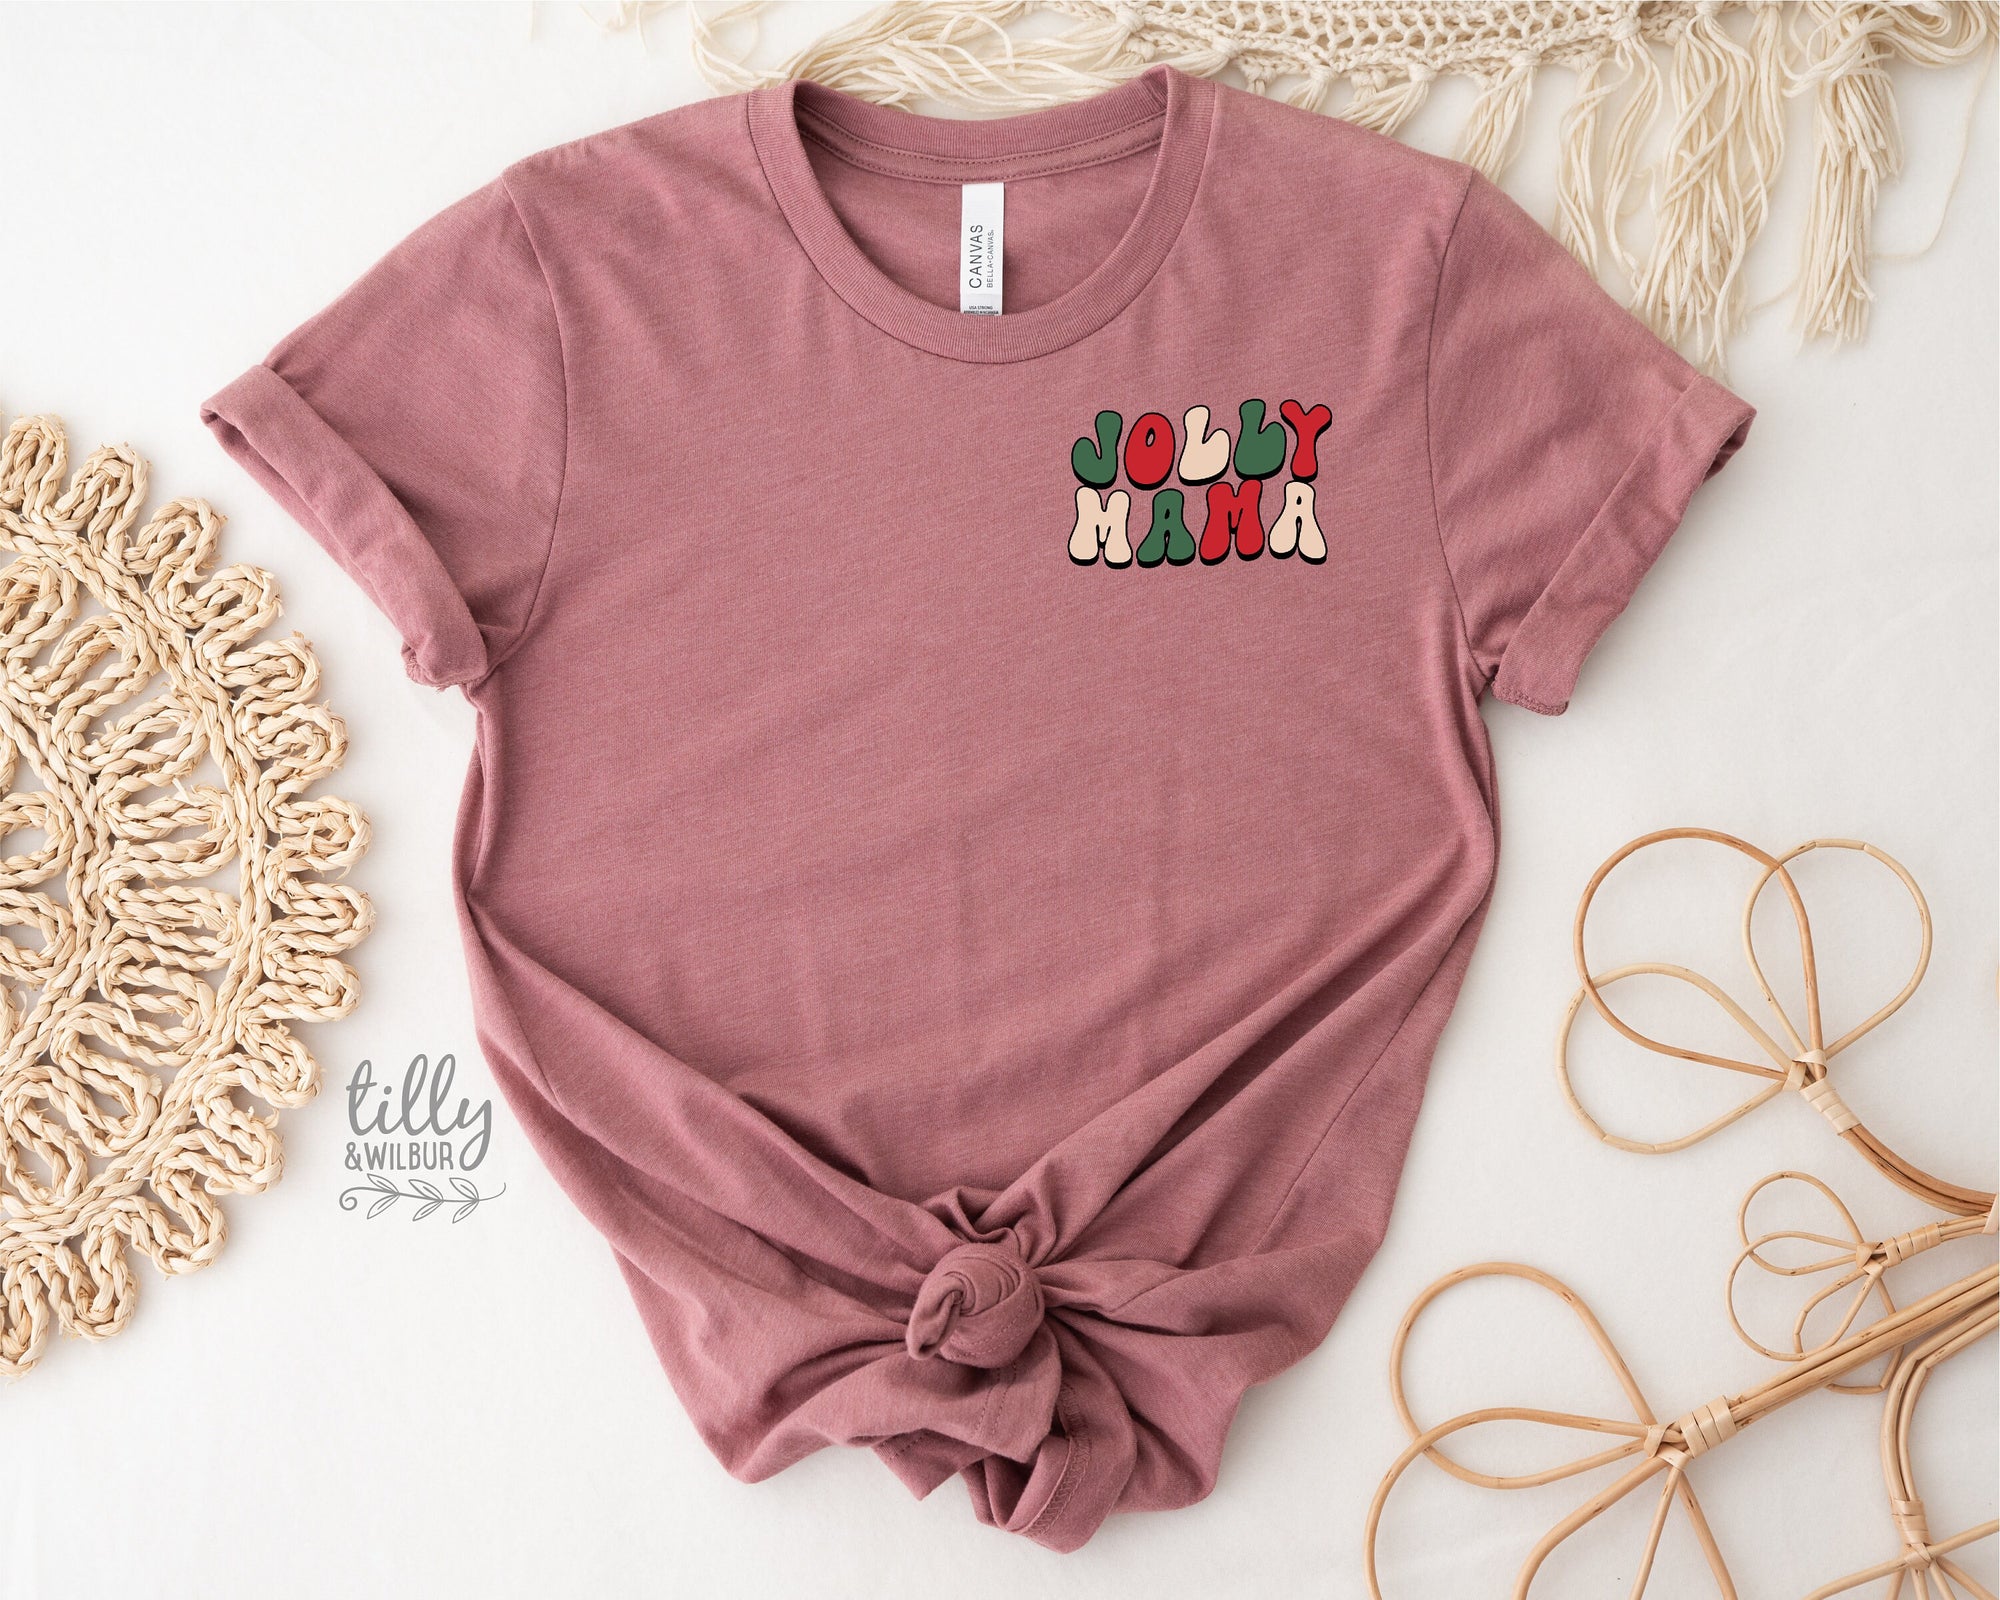 Jolly Mama Christmas T-Shirt, Christmas Tree T-Shirt, Jolly Mama T-Shirt, Family Holiday Tee, Women's Christmas T-Shirt, Xmas Gift For Her